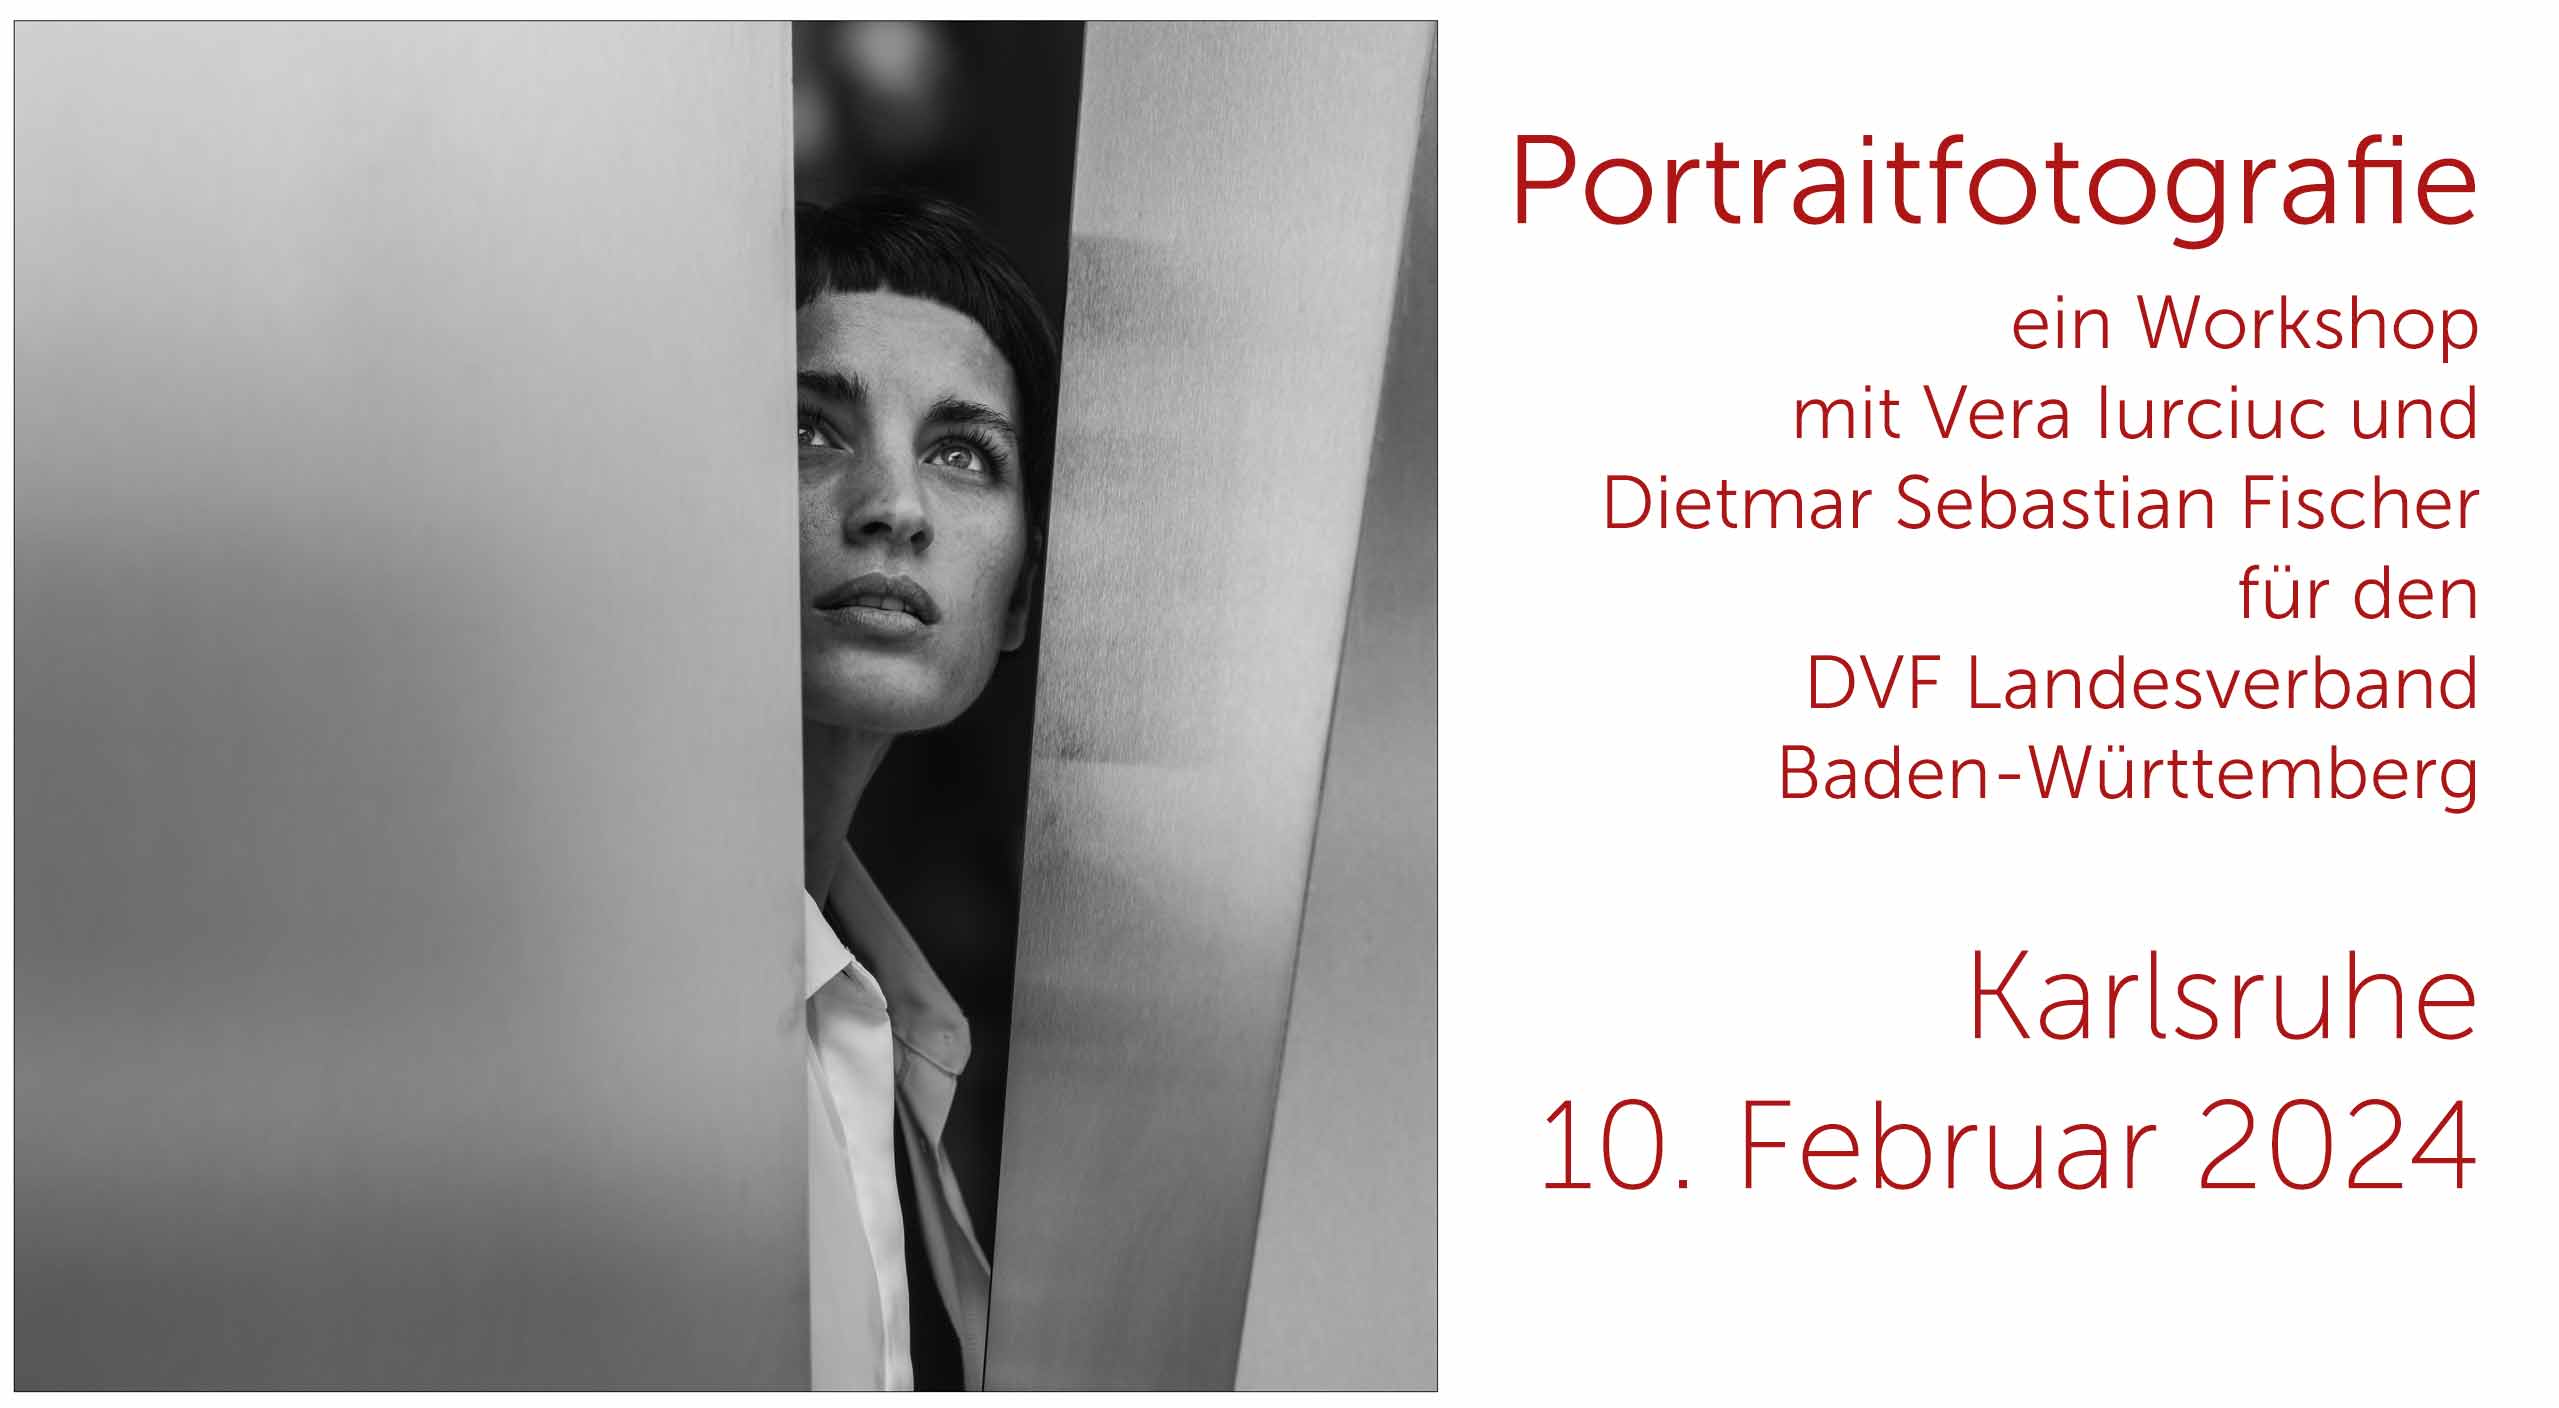 Portraitfotografie mit Vera Iurciuc - ein Workshop für den DVF